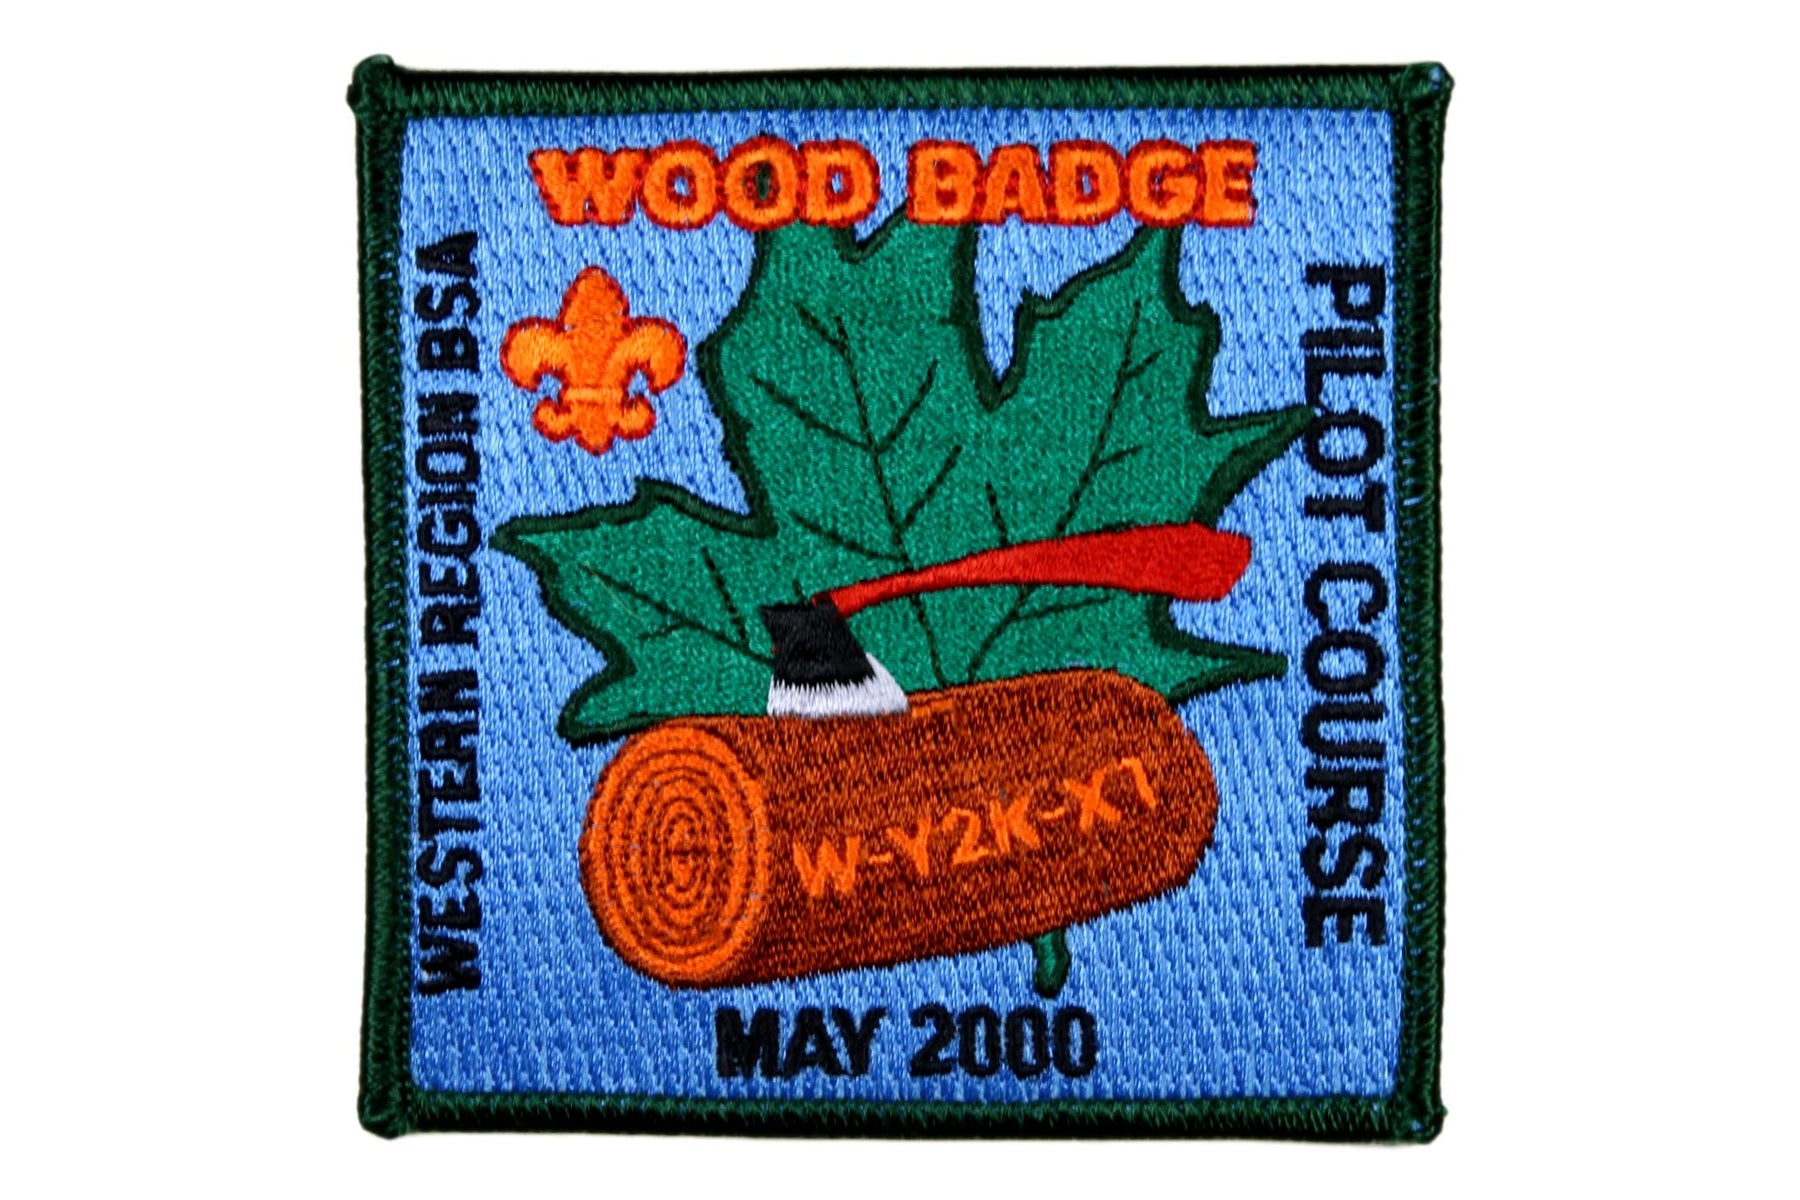 Patch - Wood Badge 2000 Pilot Course